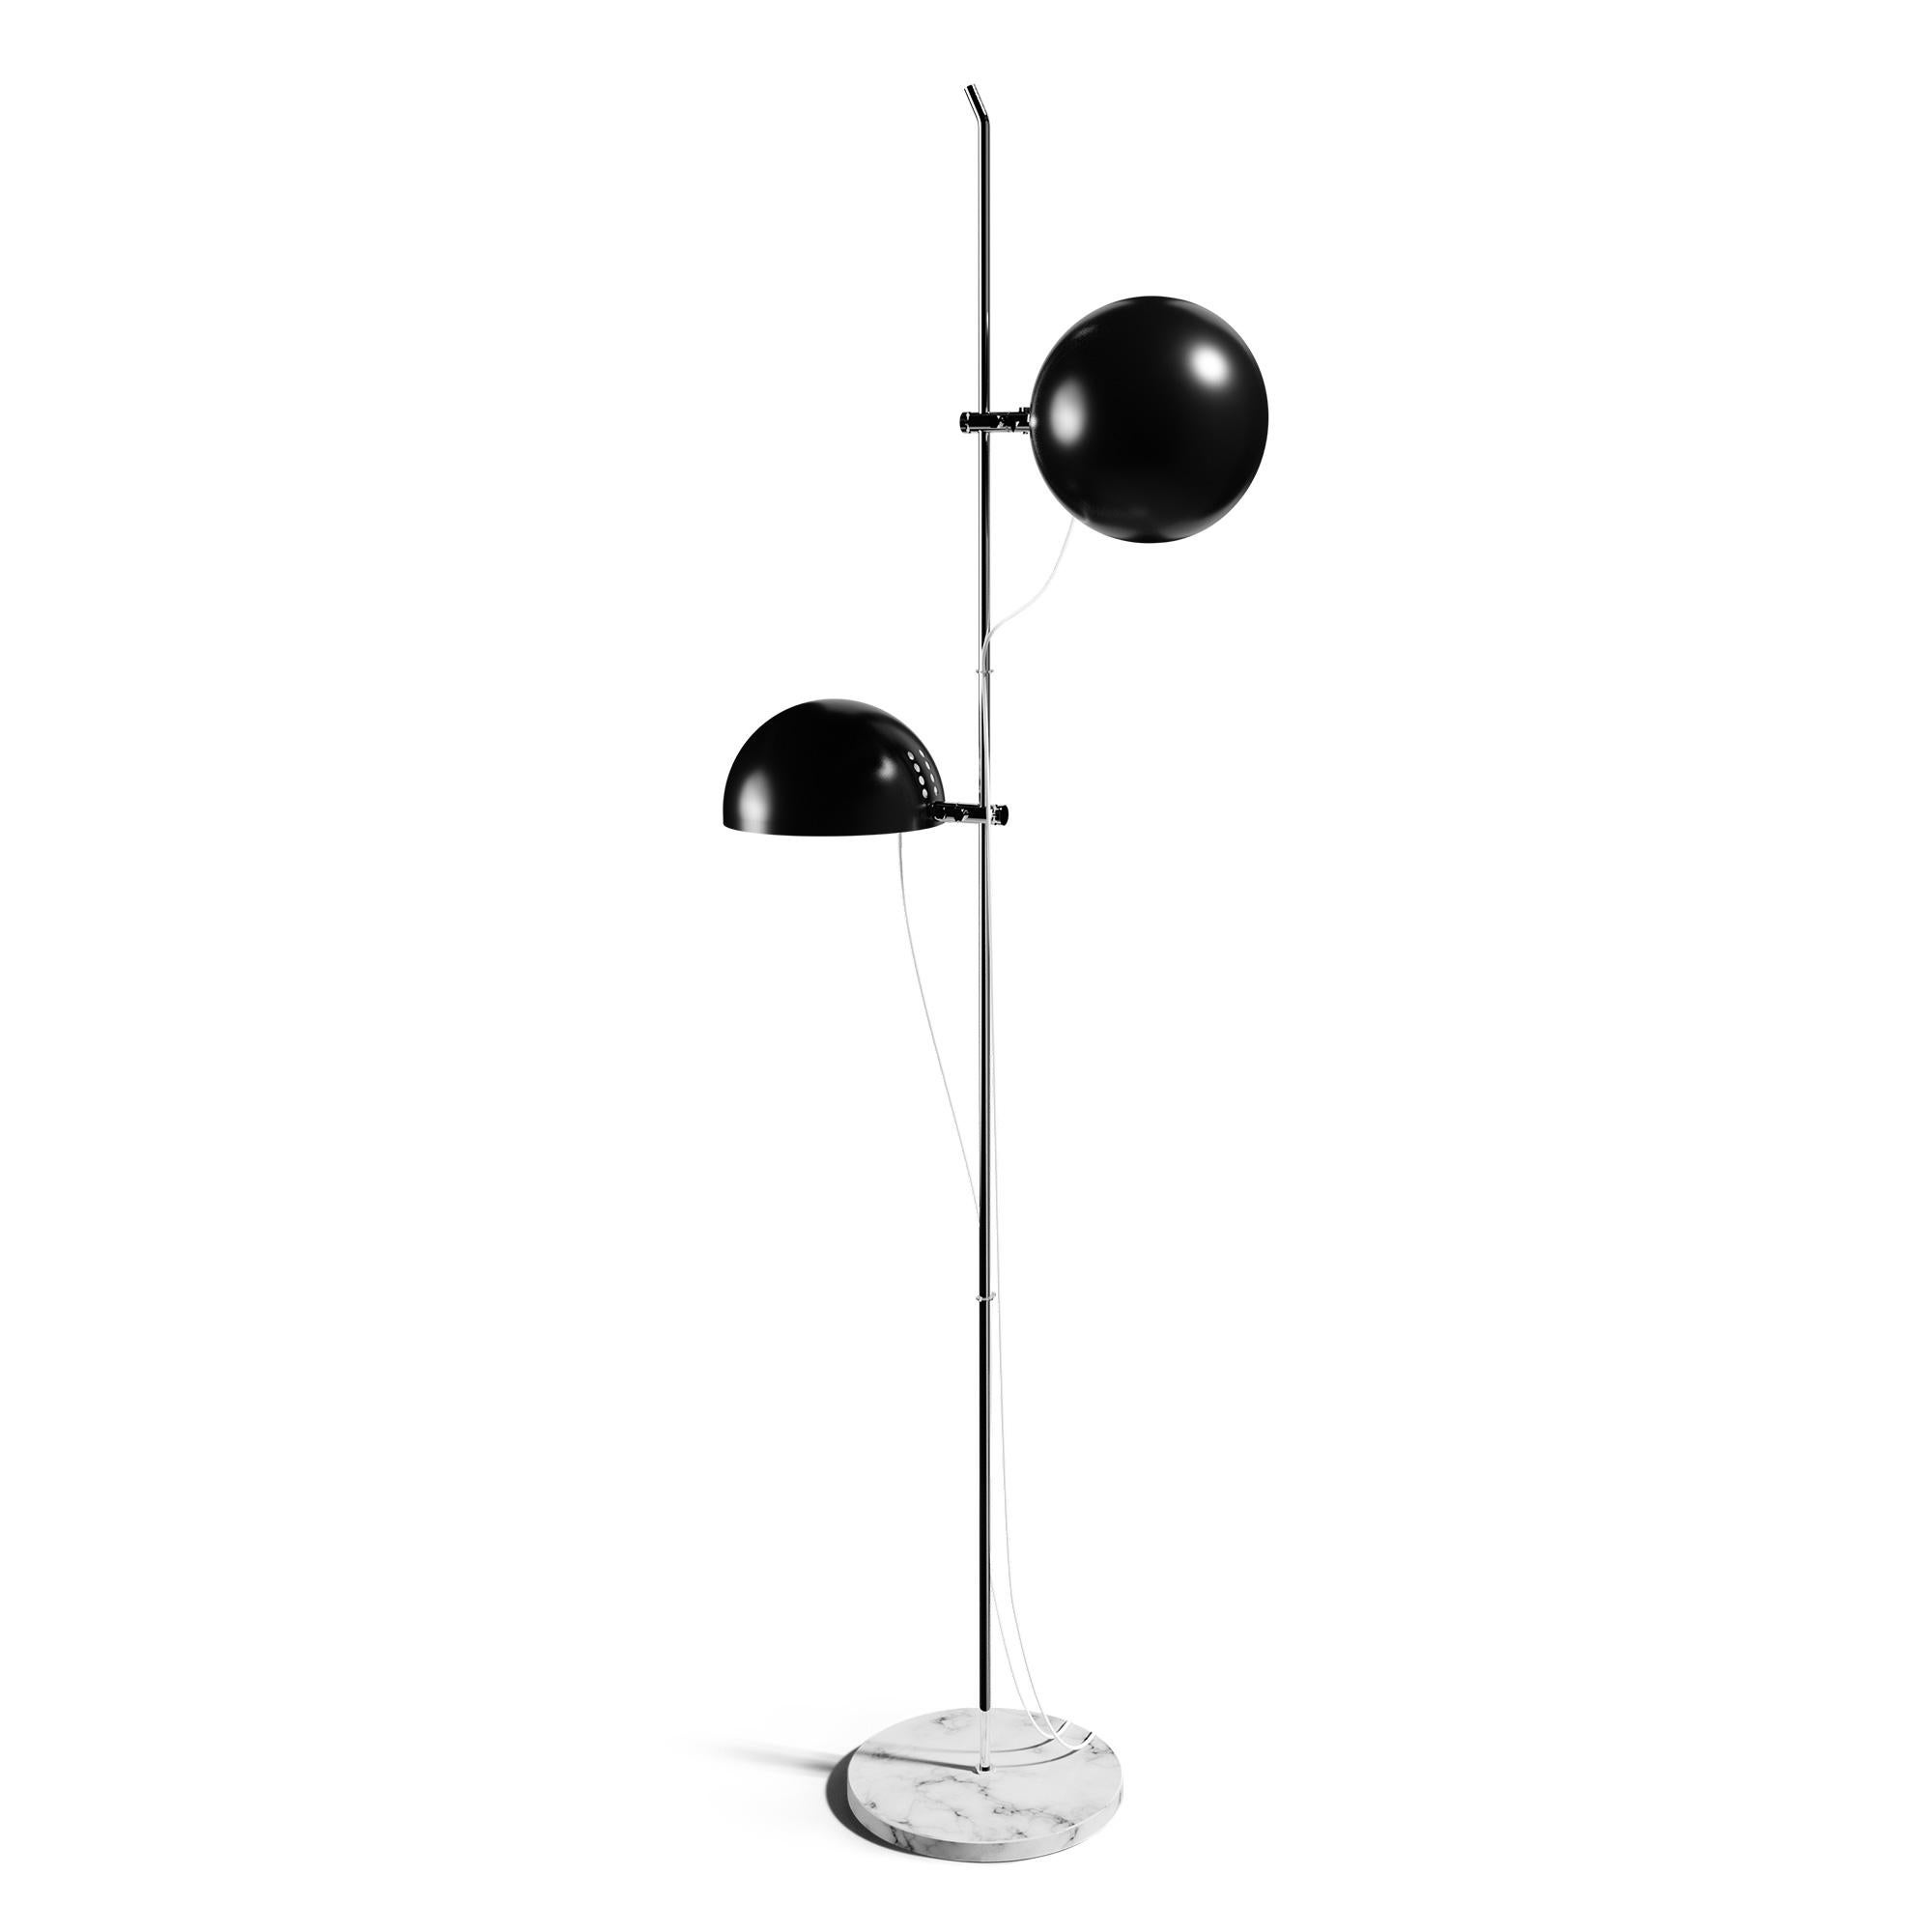 Alain Richard 'A22' Desk Lamp in Chrome for Disderot For Sale 7